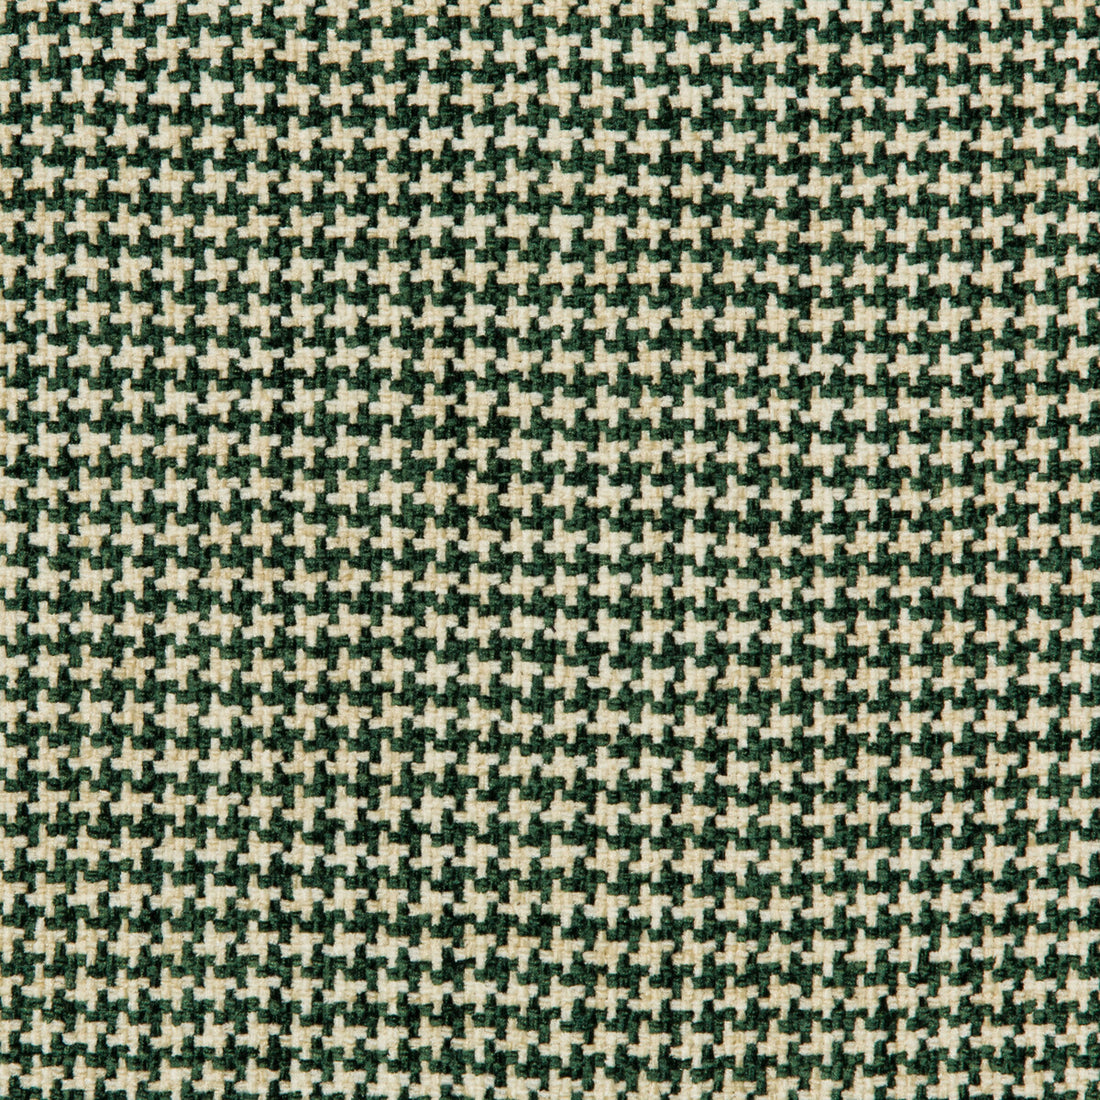 Kravet Basics fabric in 35778-30 color - pattern 35778.30.0 - by Kravet Basics